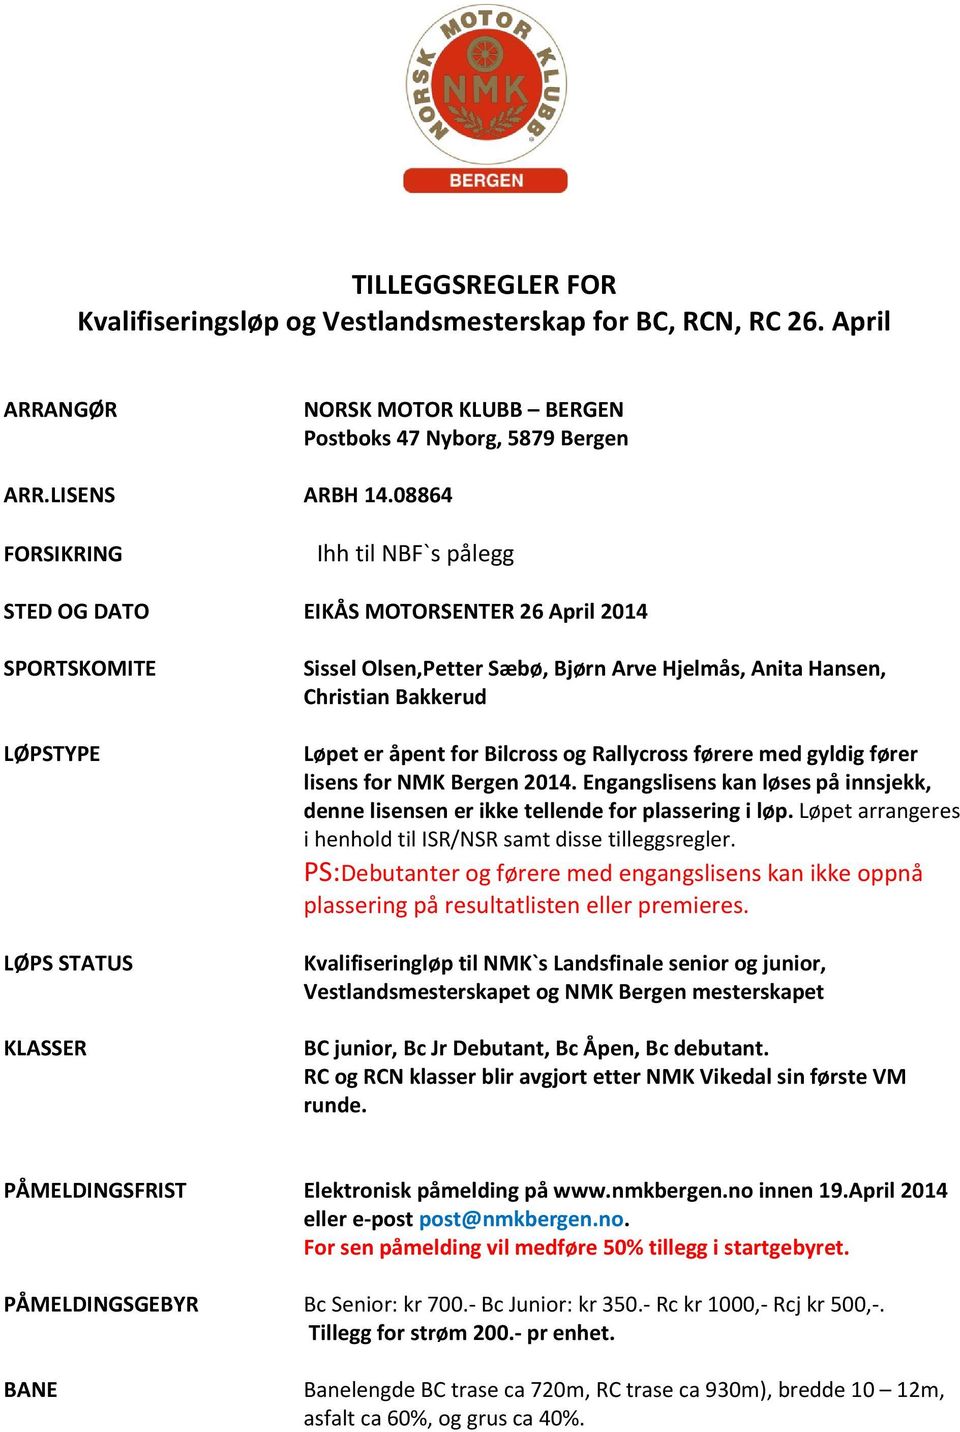 for Bilcross og Rallycross førere med gyldig fører lisens for NMK Bergen 2014. Engangslisens kan løses på innsjekk, denne lisensen er ikke tellende for plassering i løp.